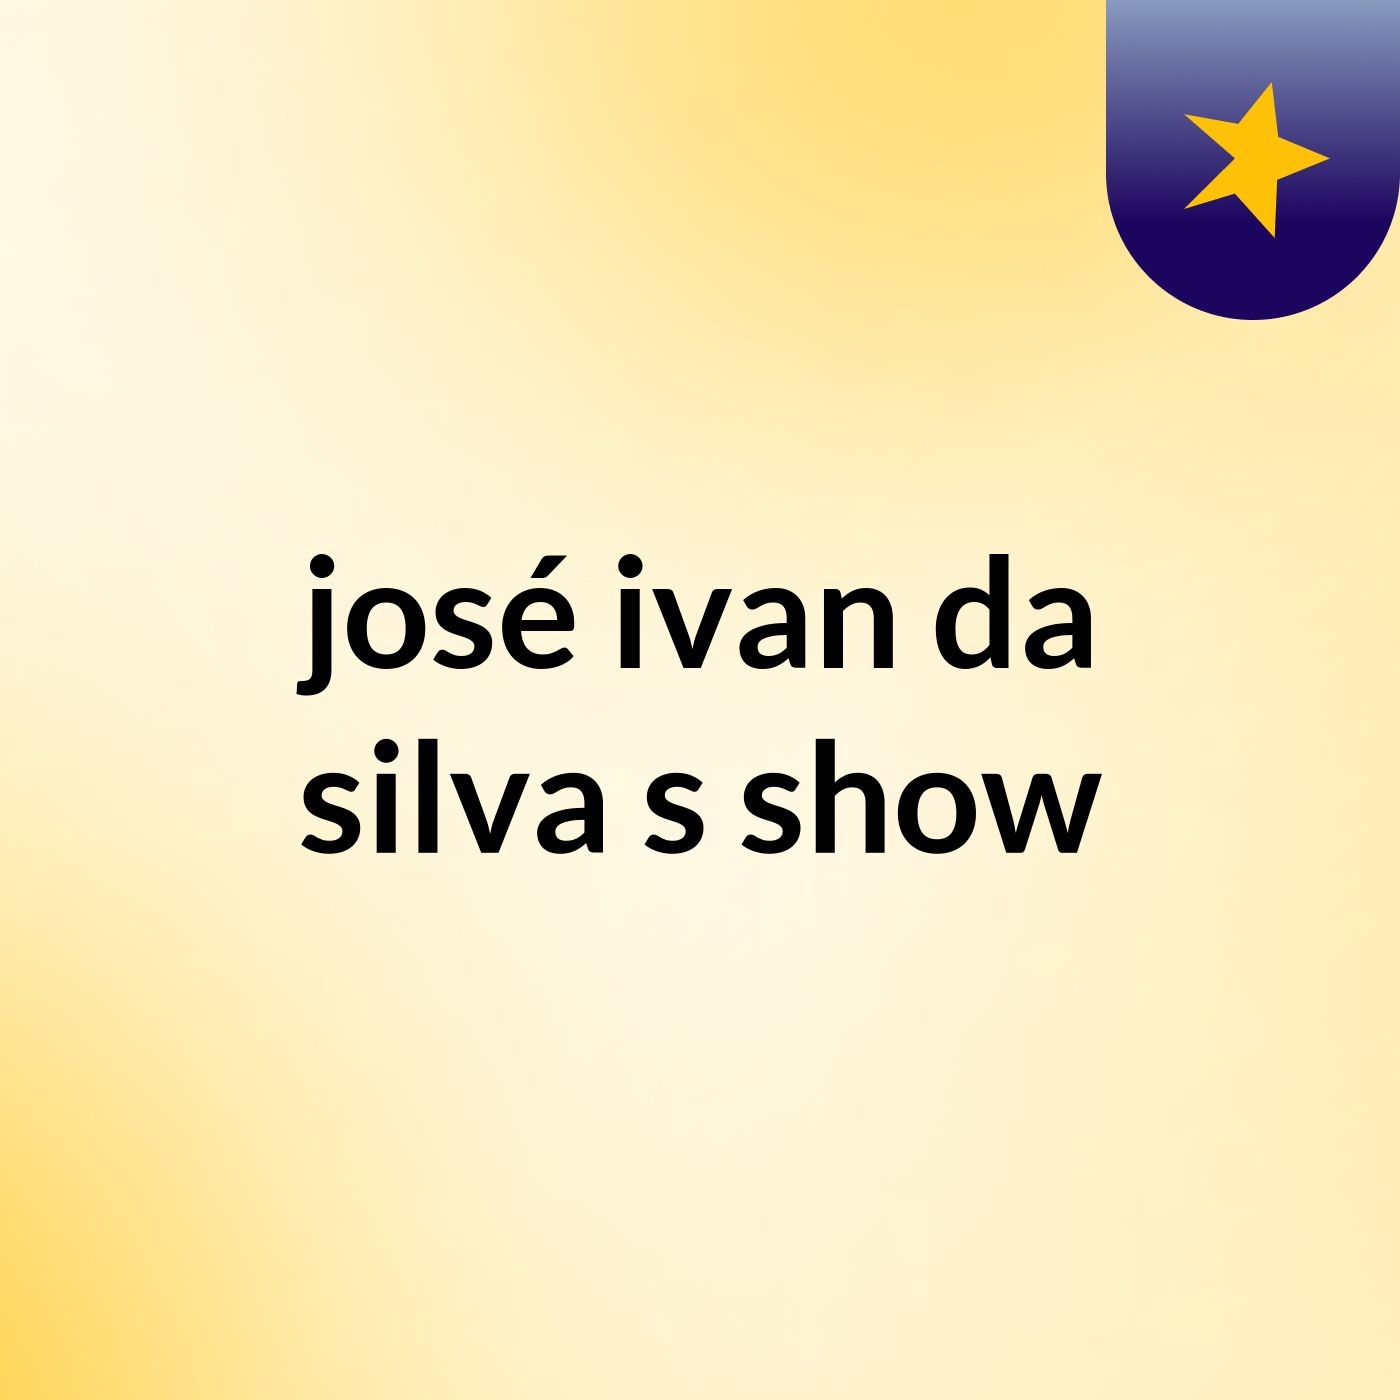 josé ivan da silva's show